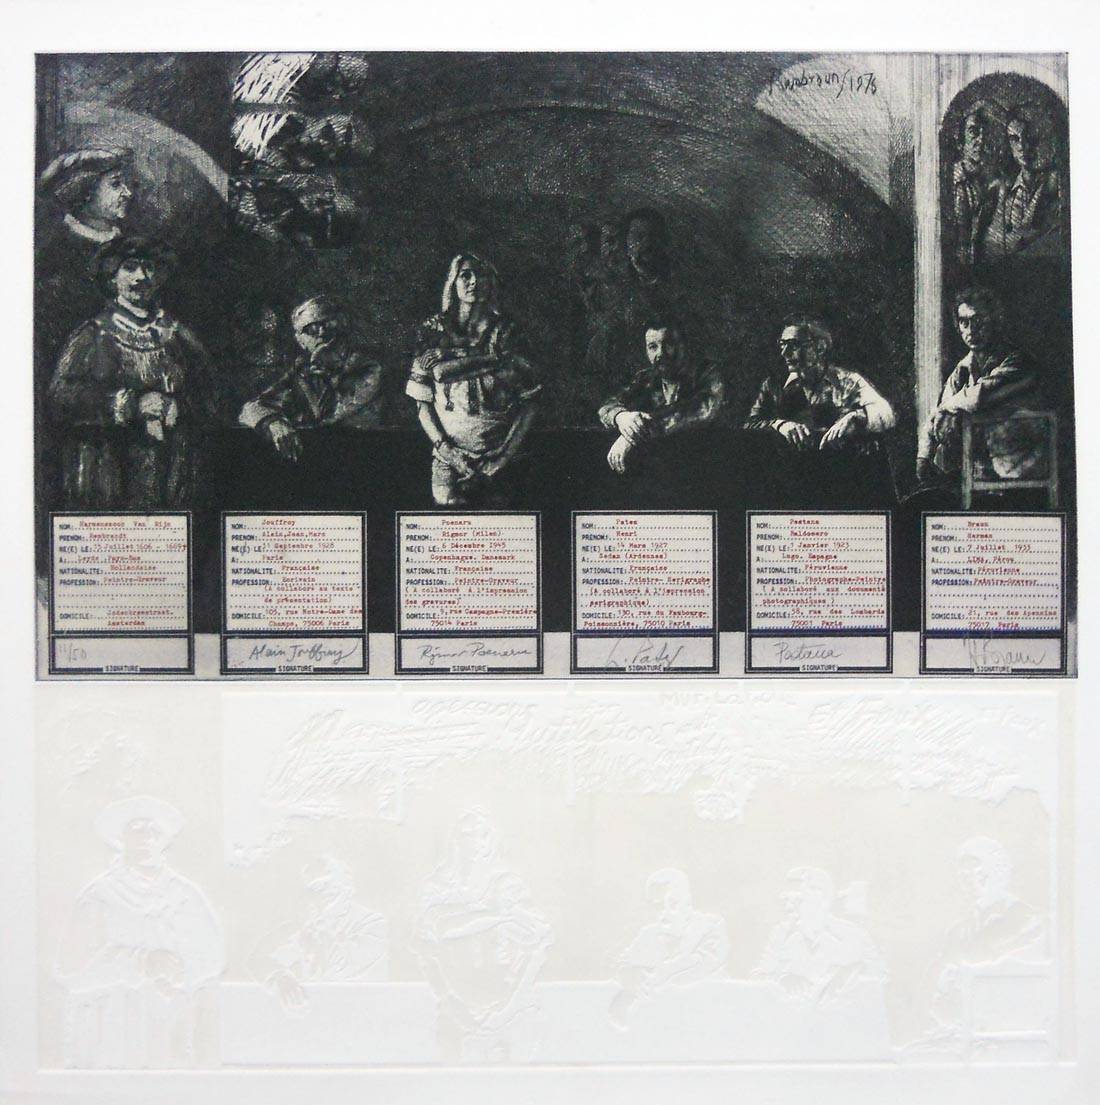 Agresiones, mutilaciones y falsificaciones, 1976. Herman Braun Vega (1933-2019). Fotograbado.  72 x 72 cm. Nº inv. 4016.